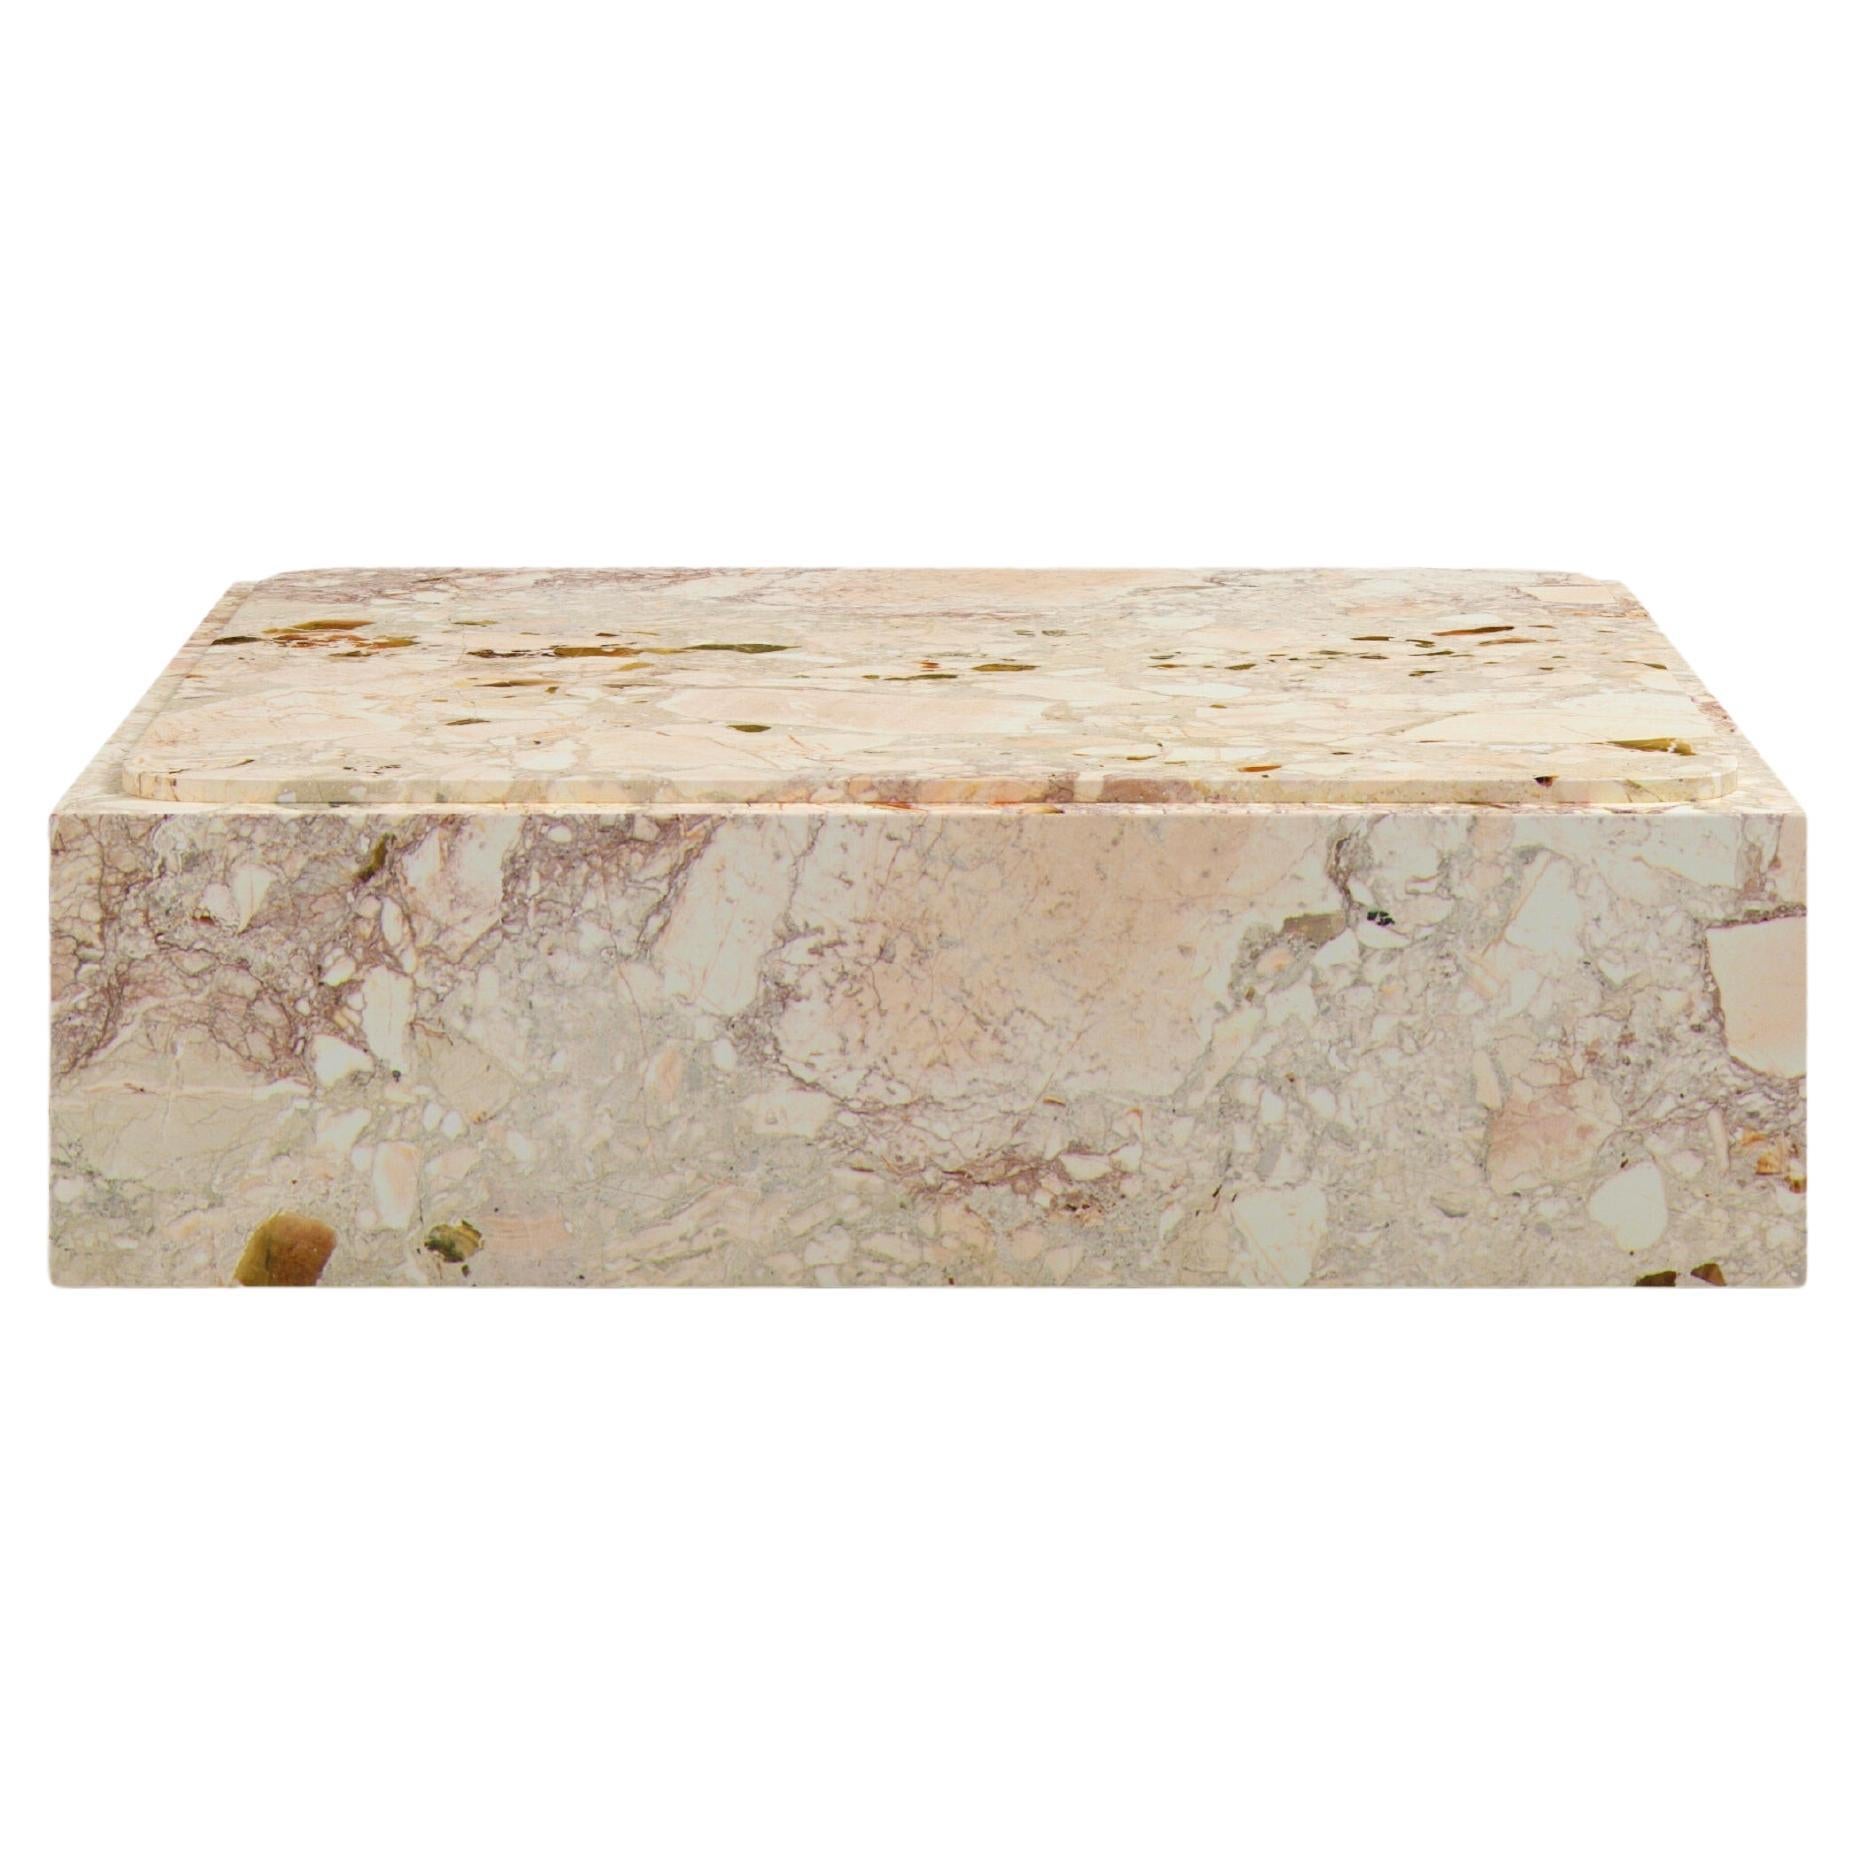 FORM(LA) Cubo Square Plinth Coffee Table 54”L x 54”W x 13”H Breccia Rosa Marble